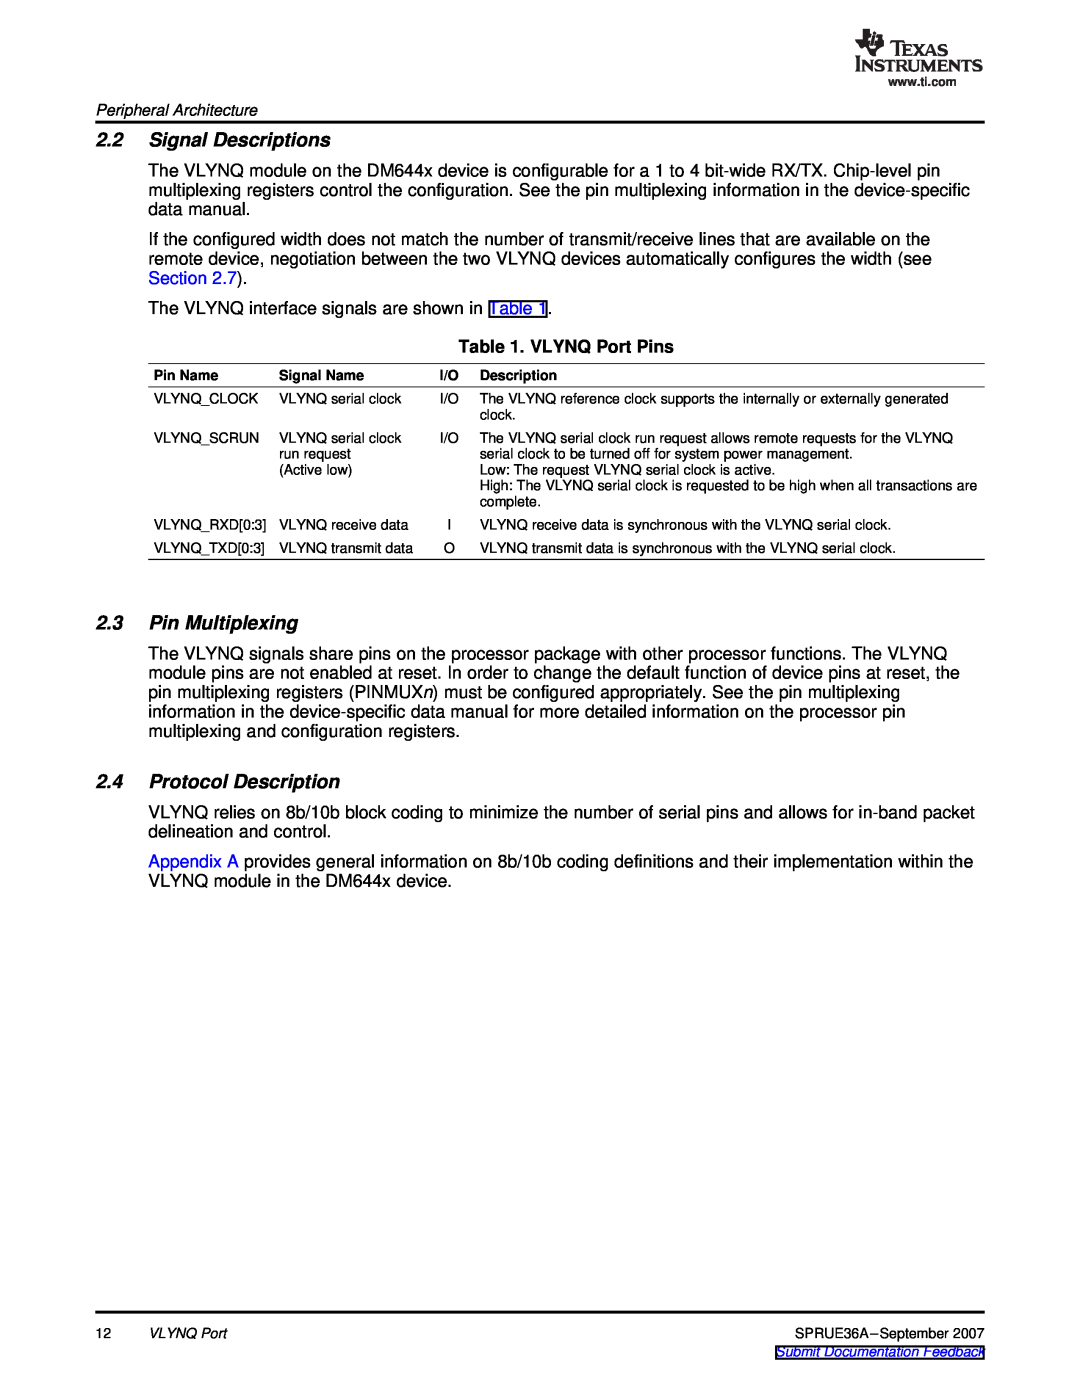 Texas Instruments manual Signal Descriptions, Pin Multiplexing, Protocol Description, VLYNQ Port Pins 